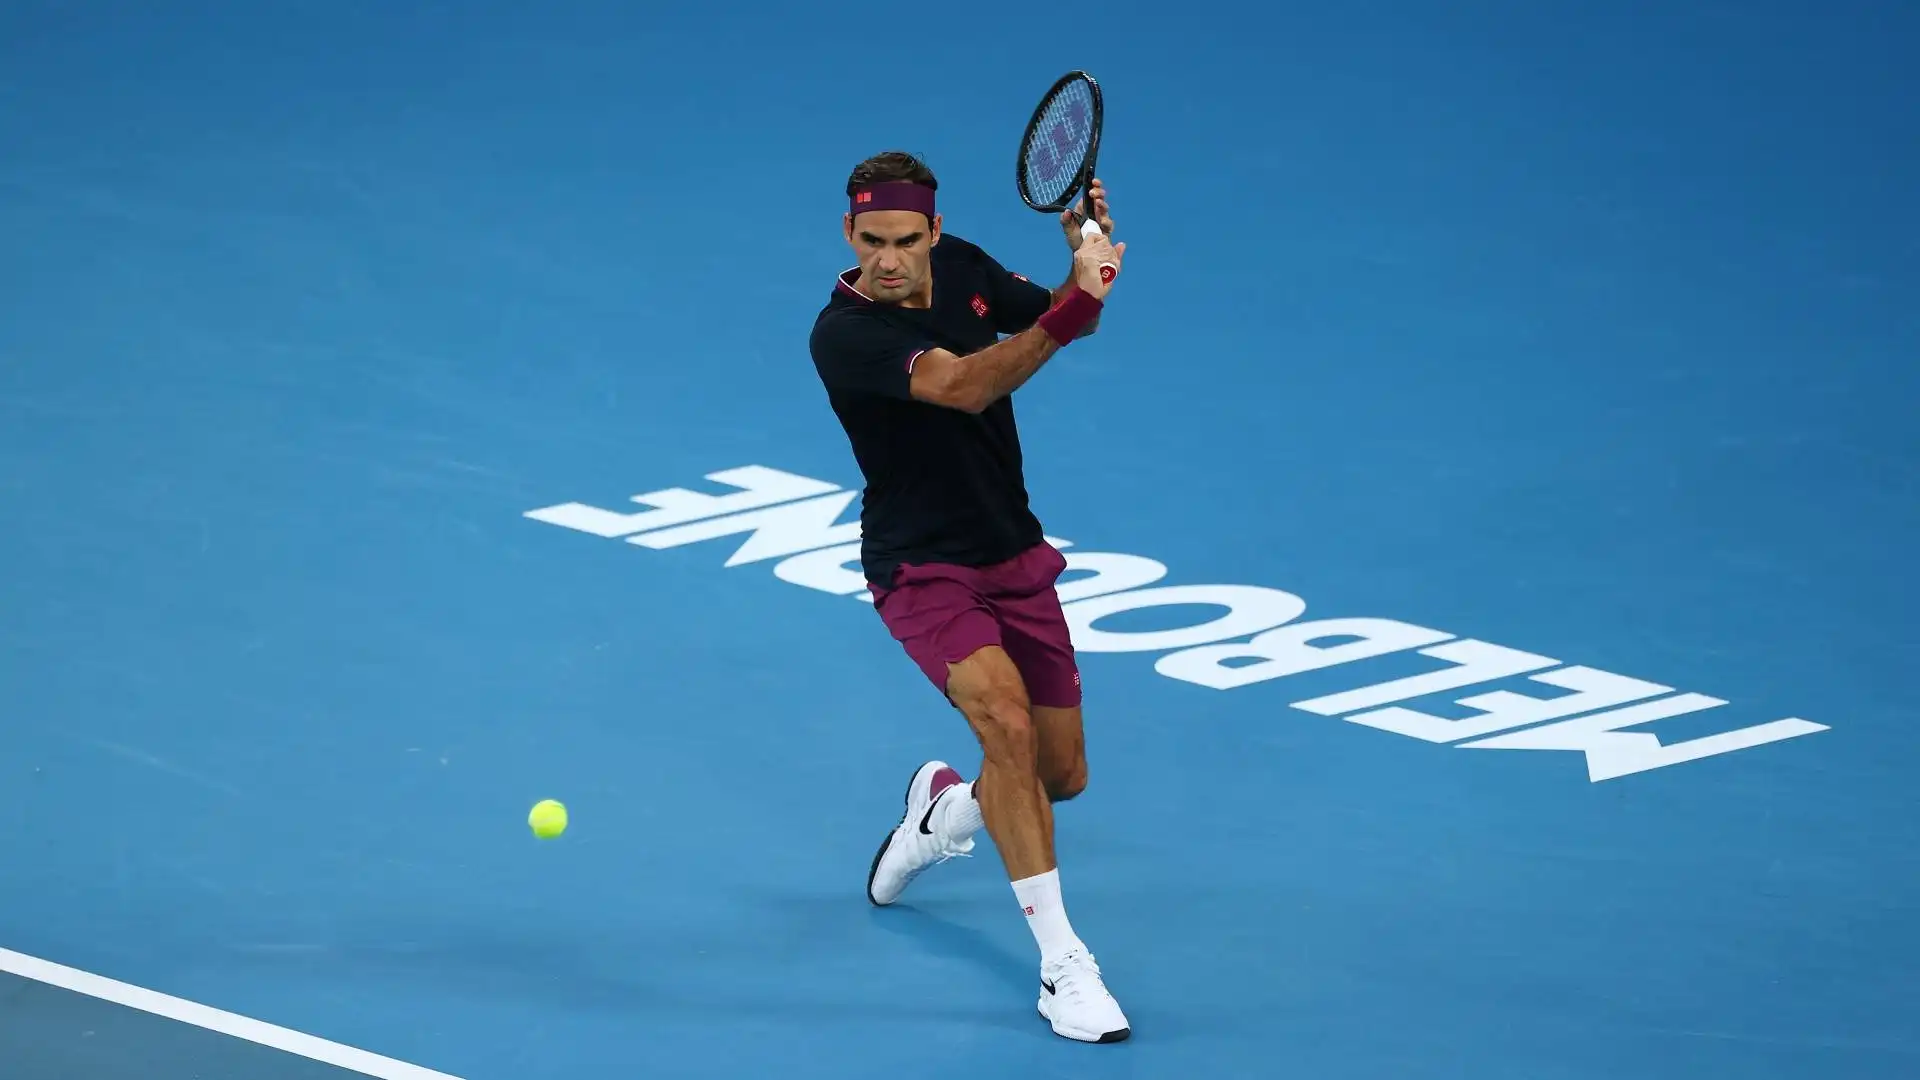 Nel 2020 Roger raggiunse le semifinali agli Australian Open, dove venne sconfitto da Novak Djokovic. Già in quel torneo comparirono i primi sintomi di quel fastidioso infortunio al ginocchio che lo tiene praticamente fermo da più di due anni